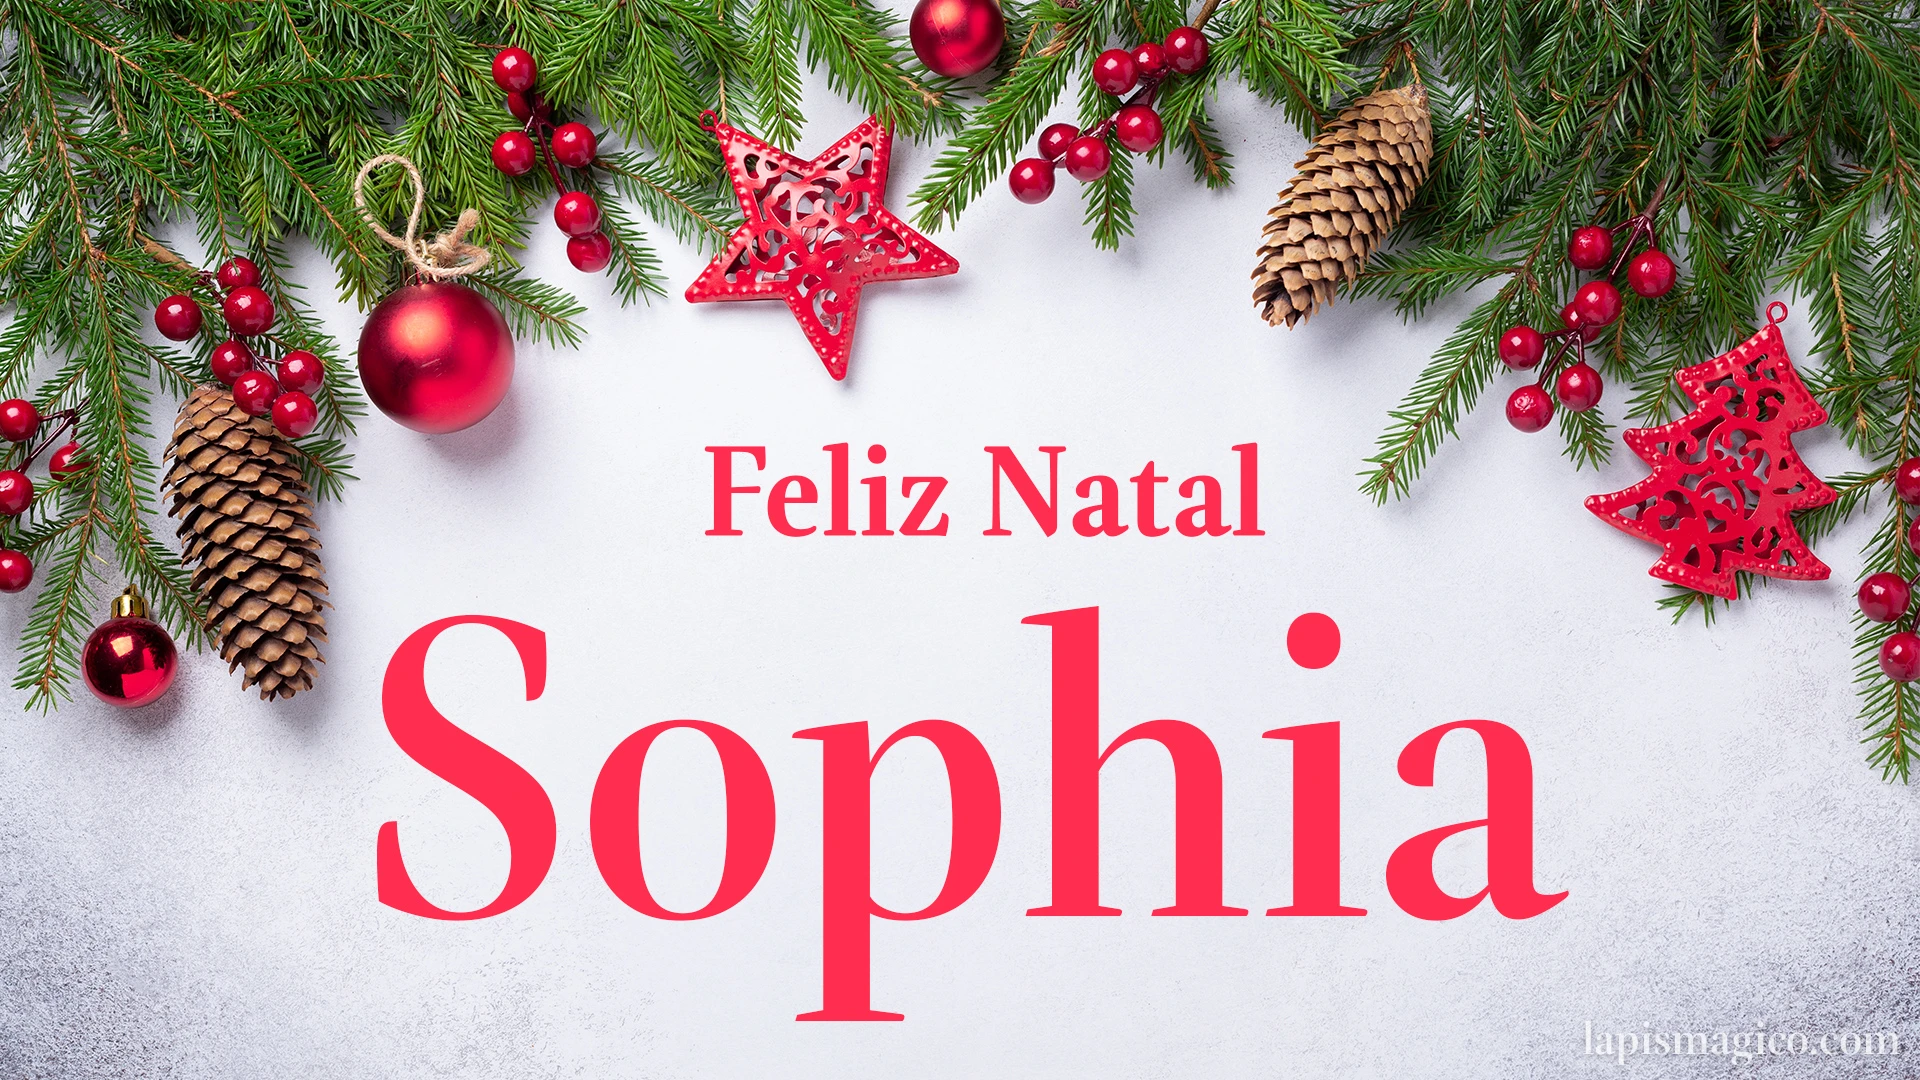 Oh Sophia, cinco postais de Feliz Natal Postal com o teu nome